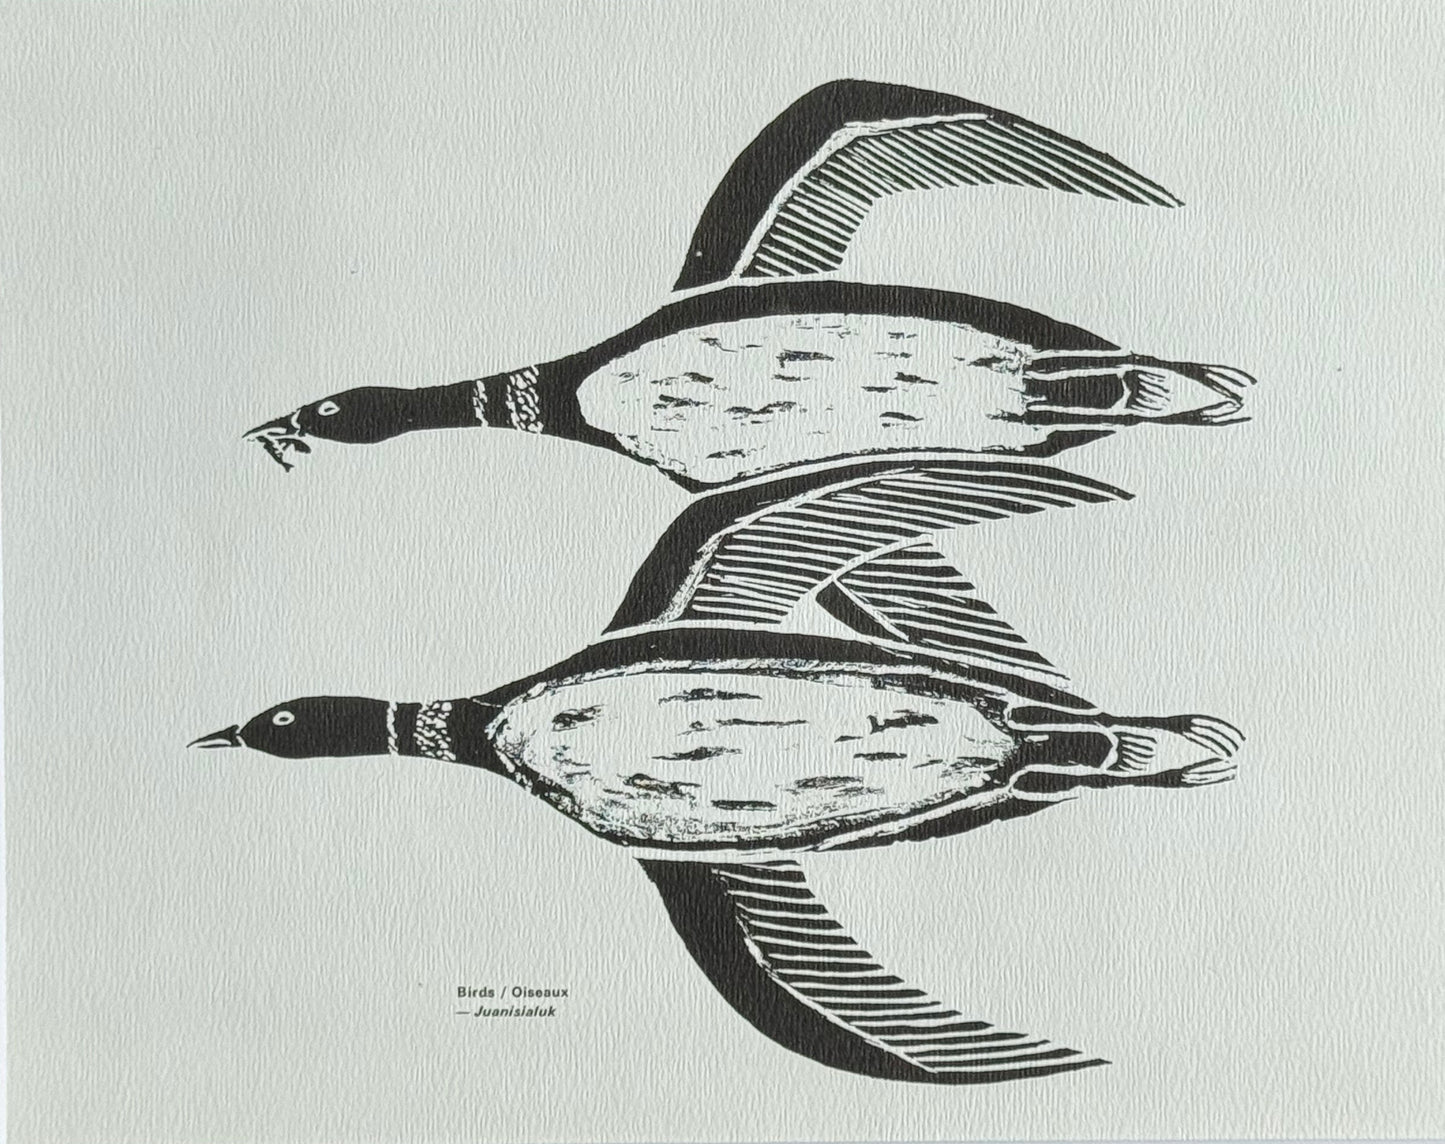 Oiseaux / Birds - Juanisialuk Irqumia - Collection Inuit